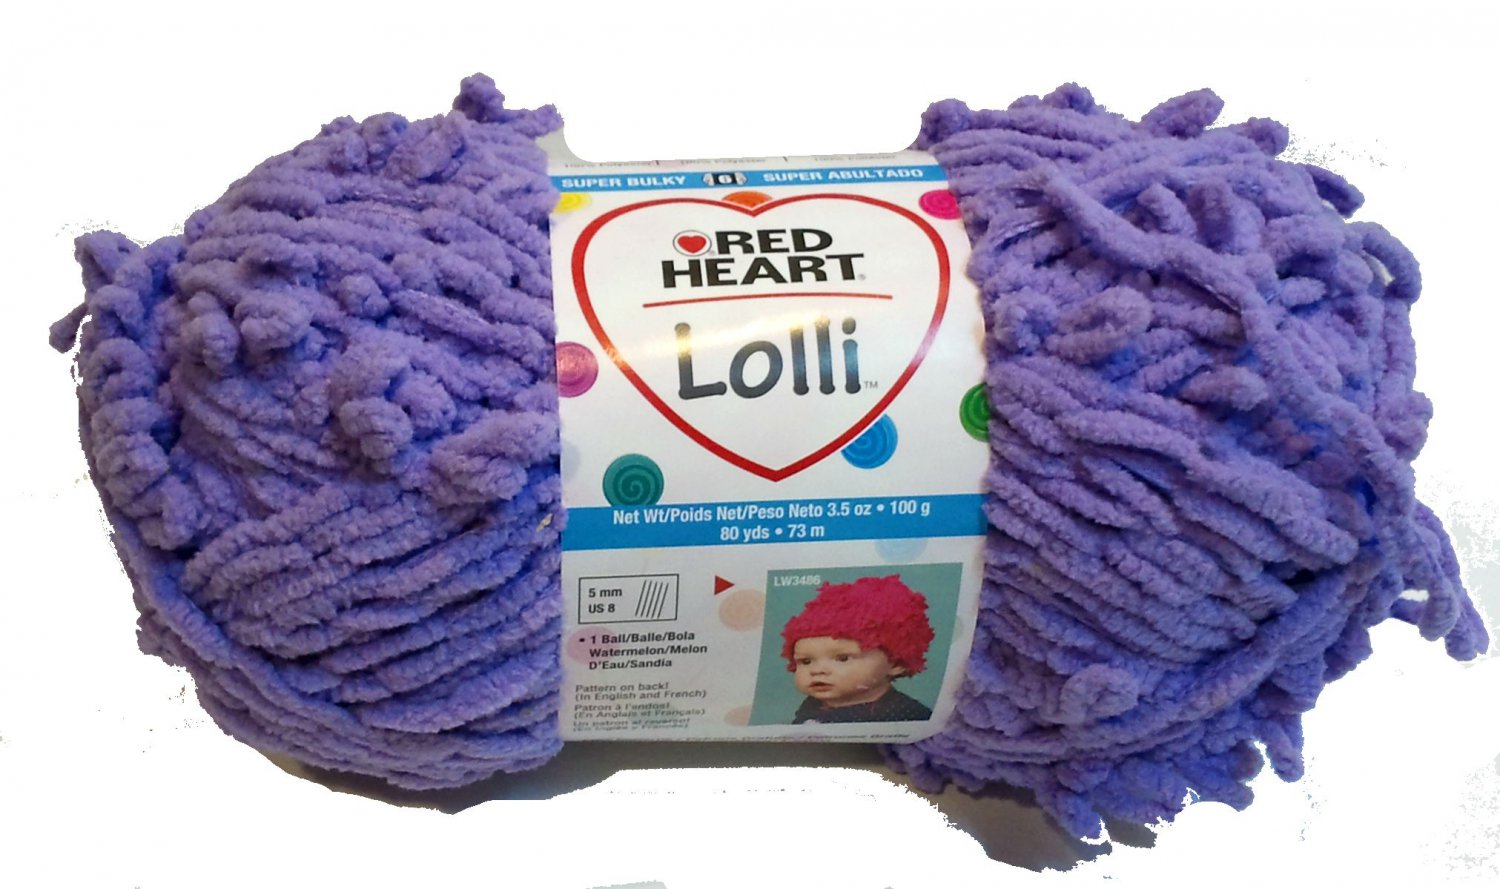 loopy yarn